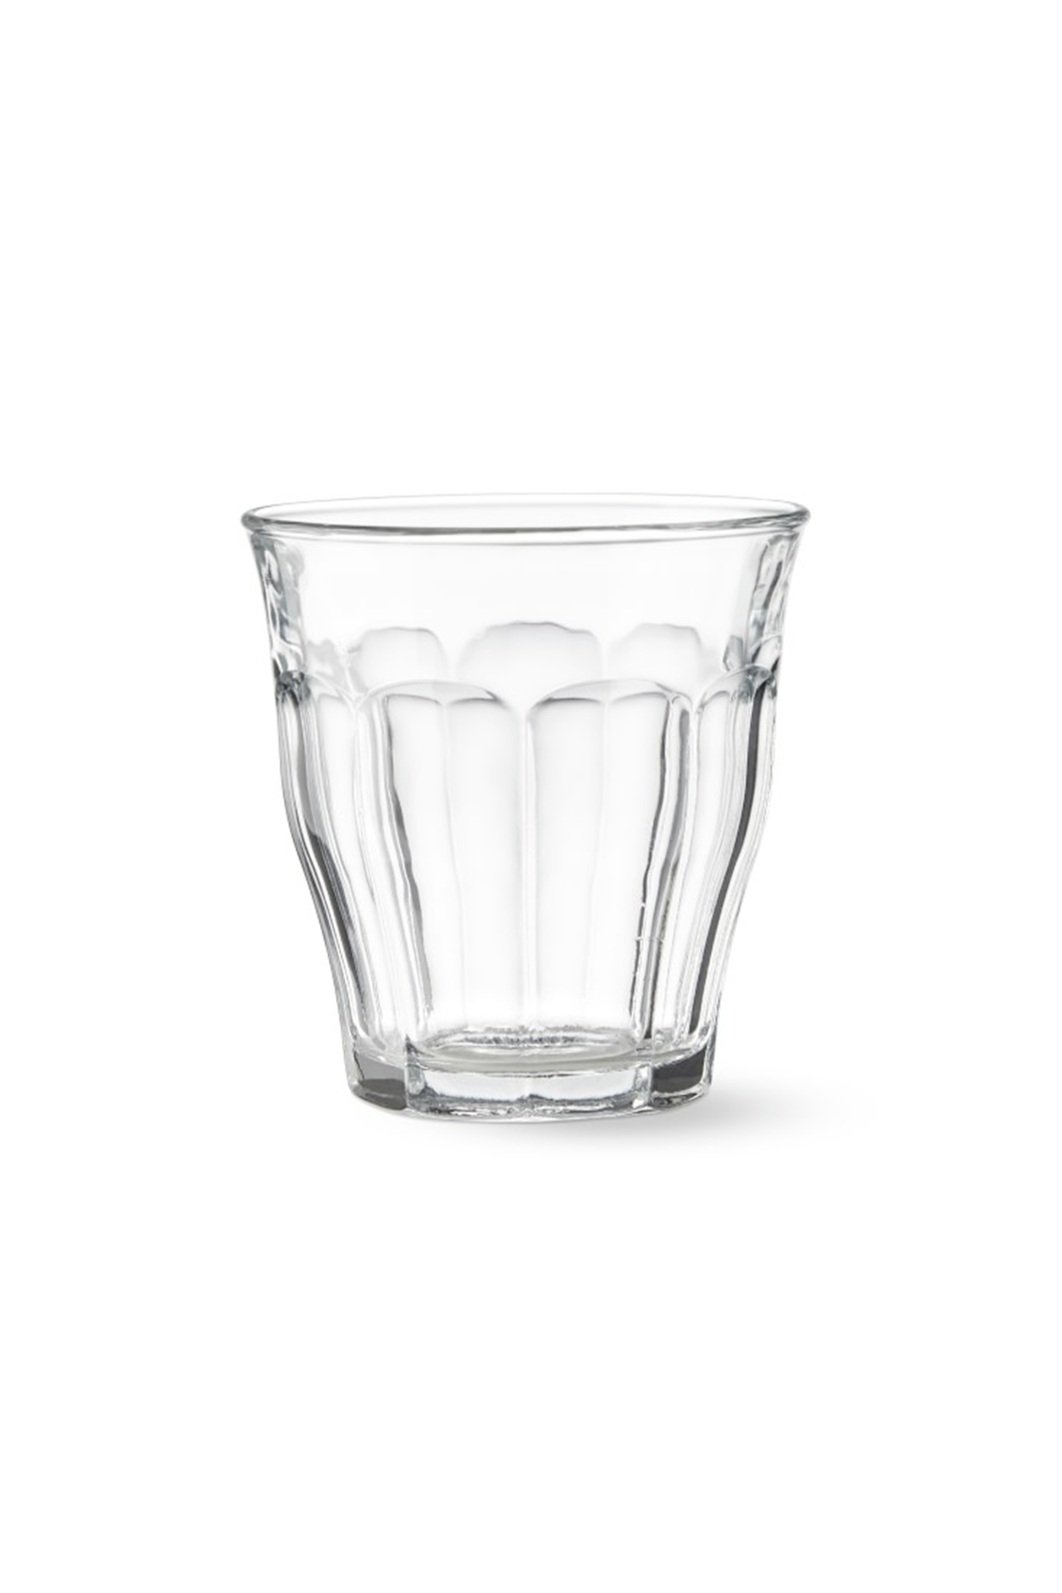 Duralex_The+Best+Glassware.jpg